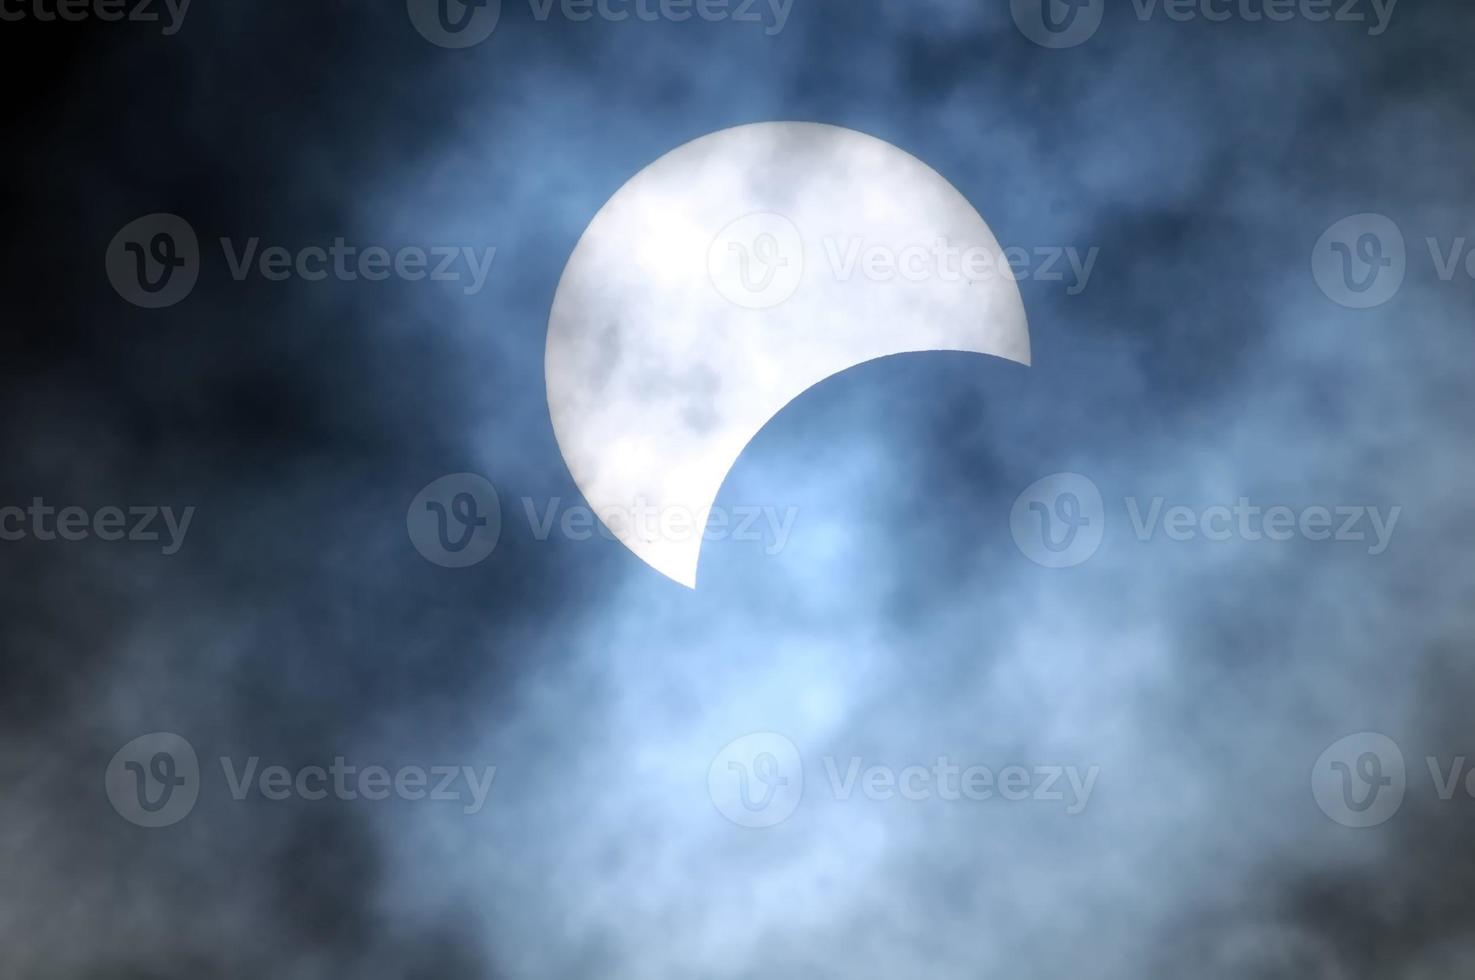 eclipse solar parcial foto